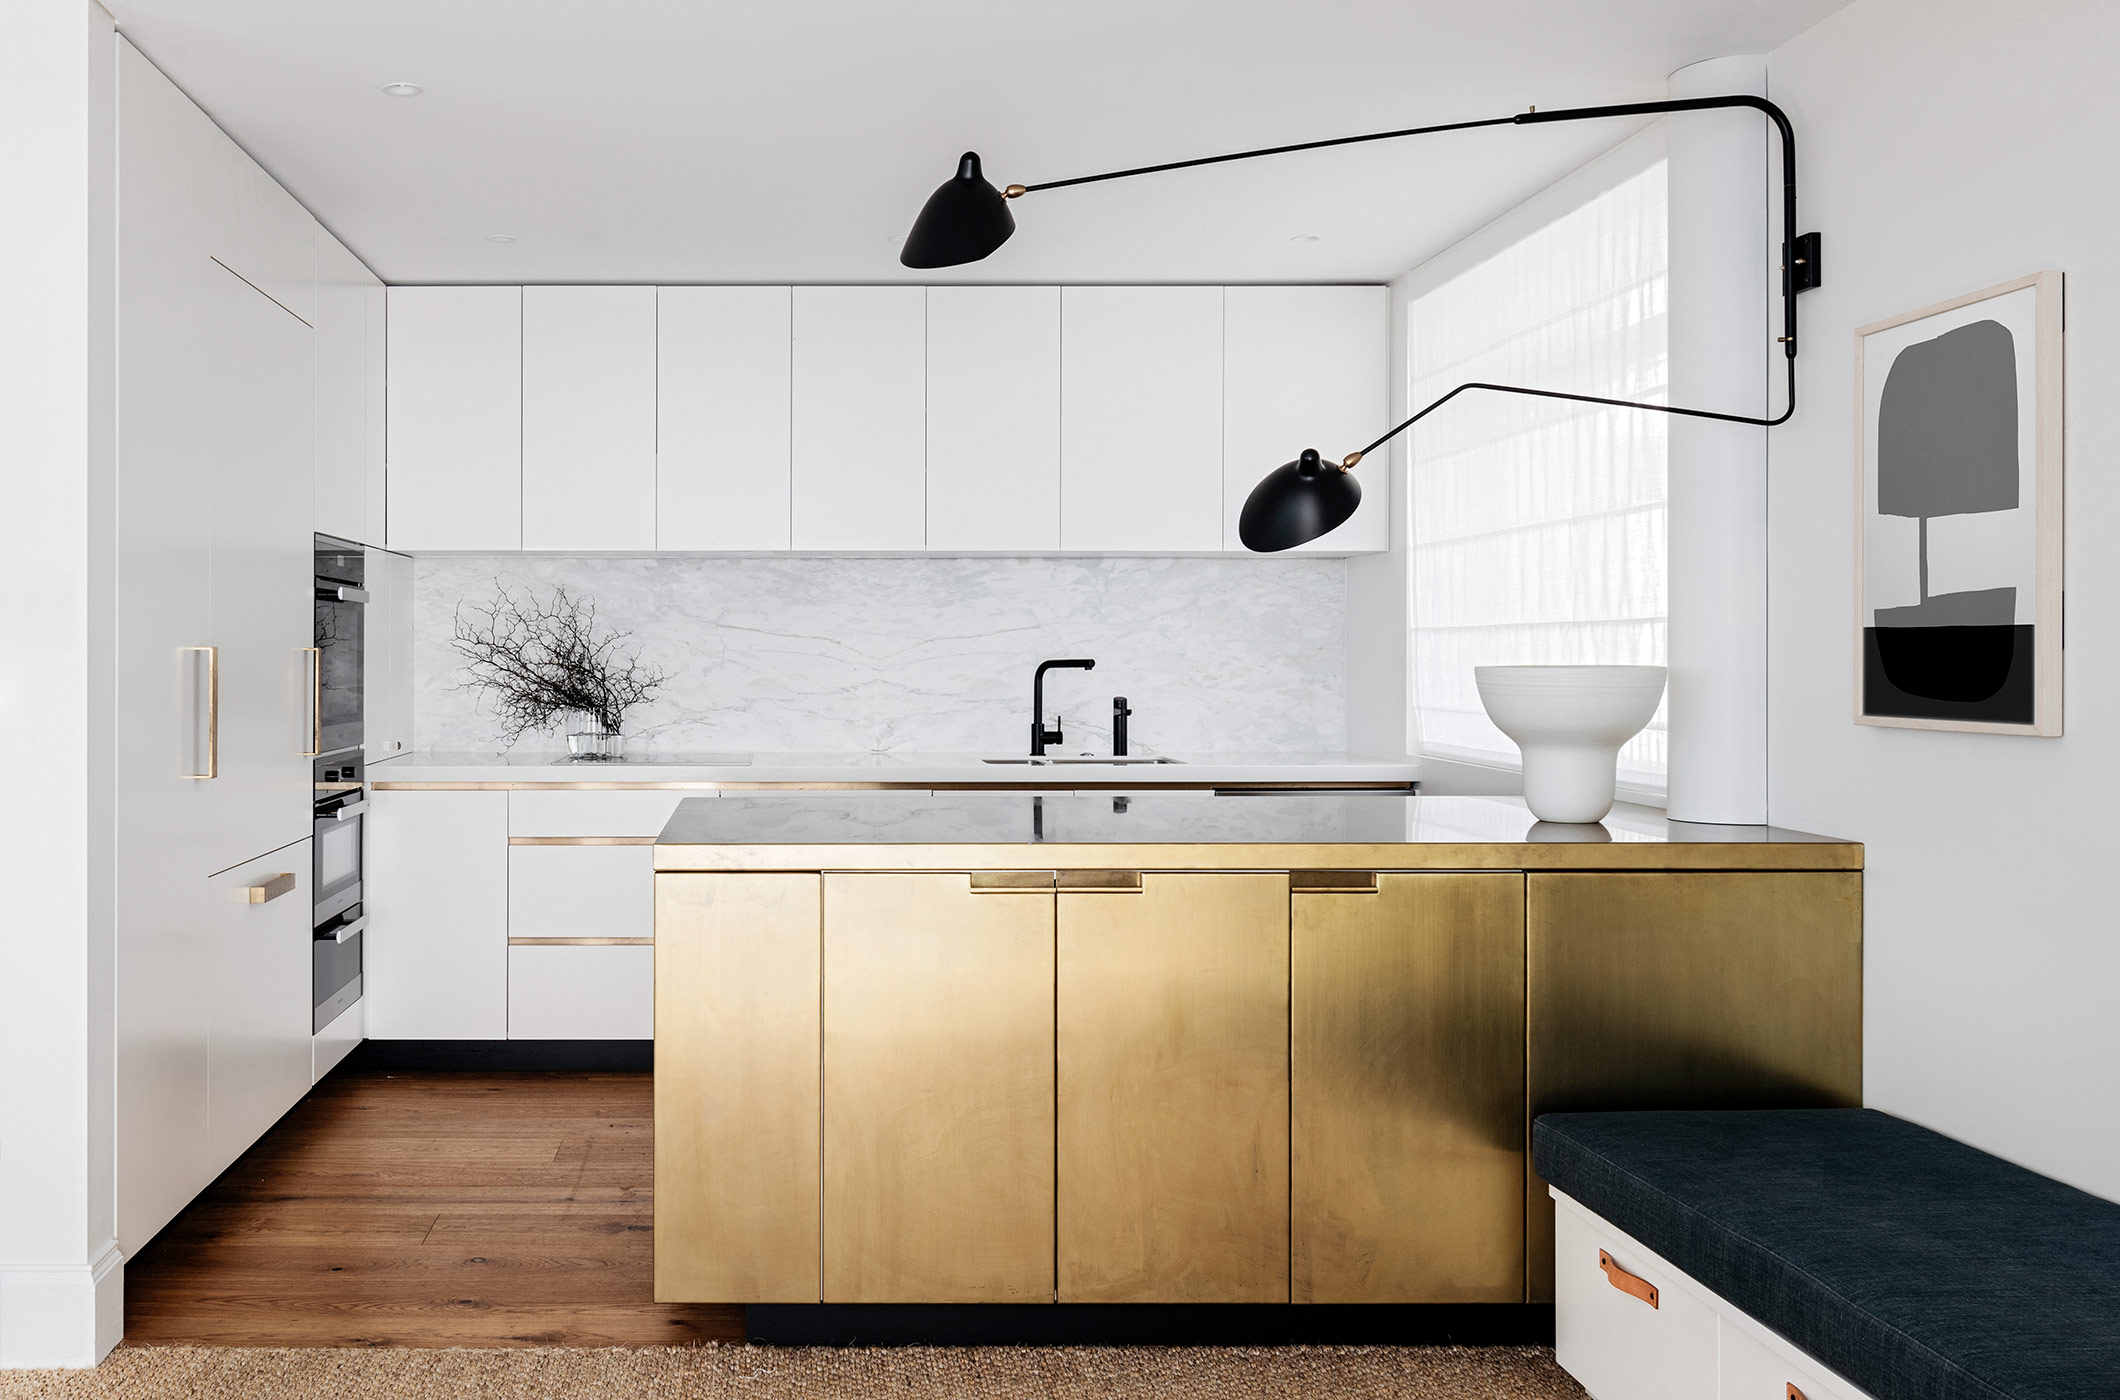 设计师对厨房细节的处理很耐人寻味，简单的吊灯提升了空间的层次感。